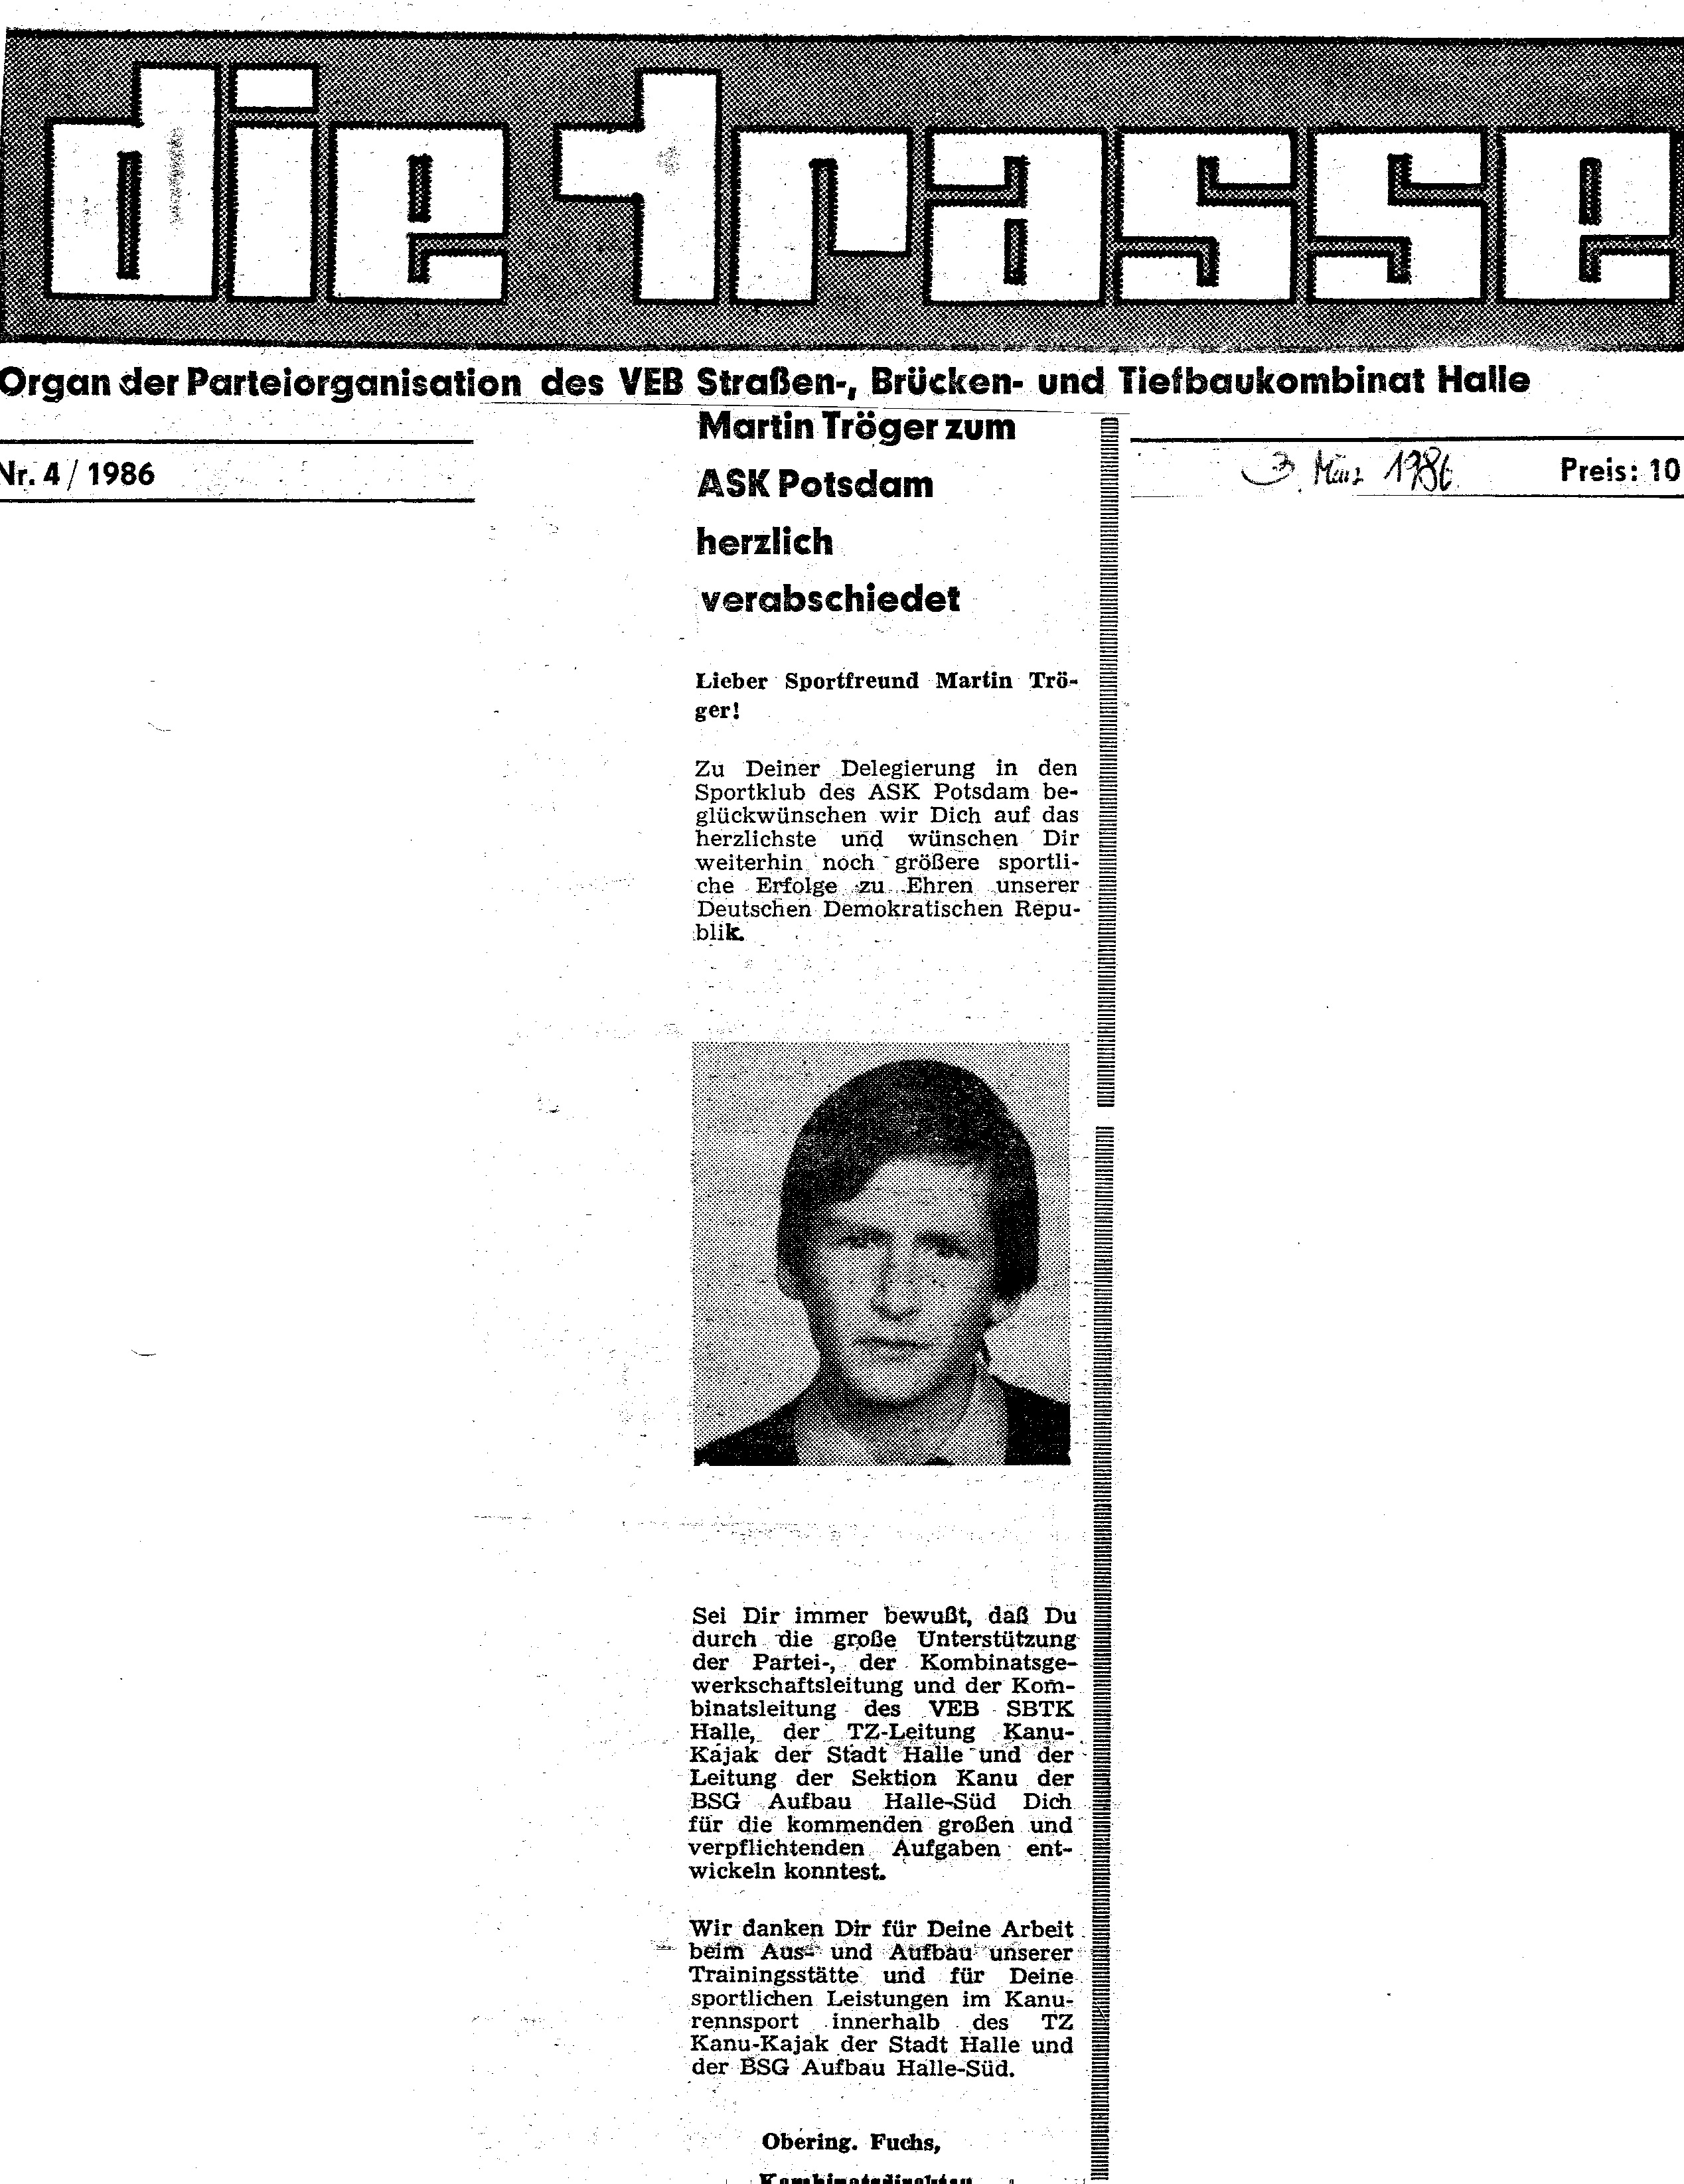 1986-03-03 Trasse Martin Tröger zum ASK Potsdam herzlich verabschiedet